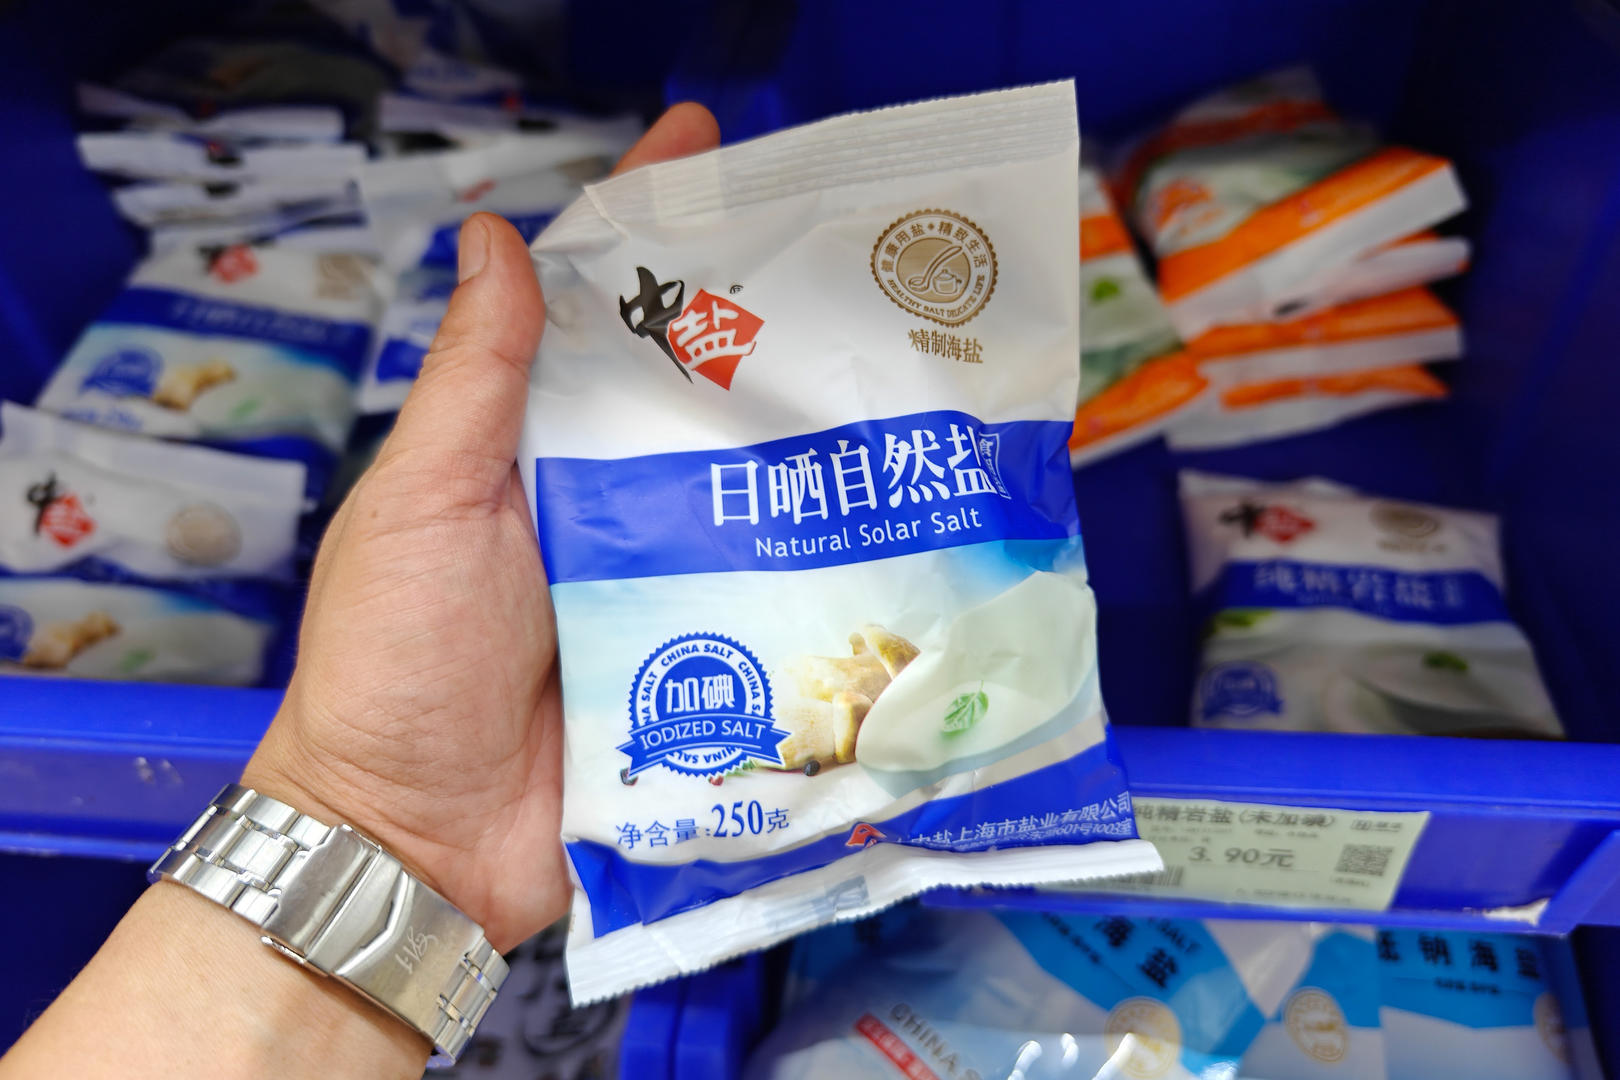 ▲上海一超市内食盐供应充足价格平稳 据视觉中国